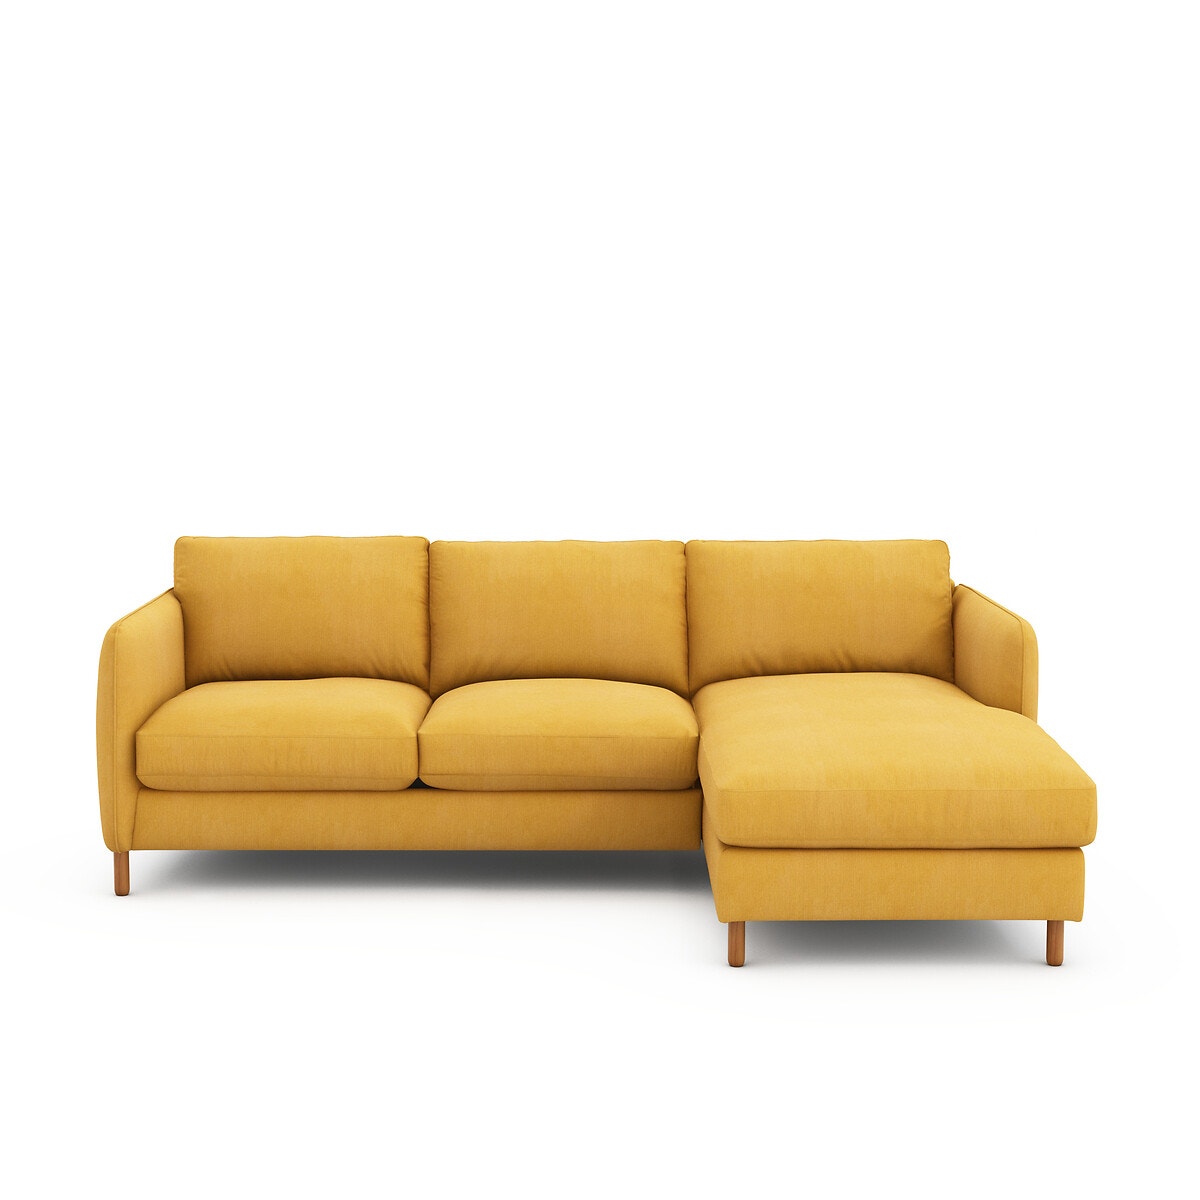 Σπίτι > Έπιπλα > Καθιστικό > Καναπέδες > Γωνιακοί καναπέδες Πτυσσόμενος γωνιακός καναπές από βαμβάκι λινό Μ95xΠ157xΥ86cm